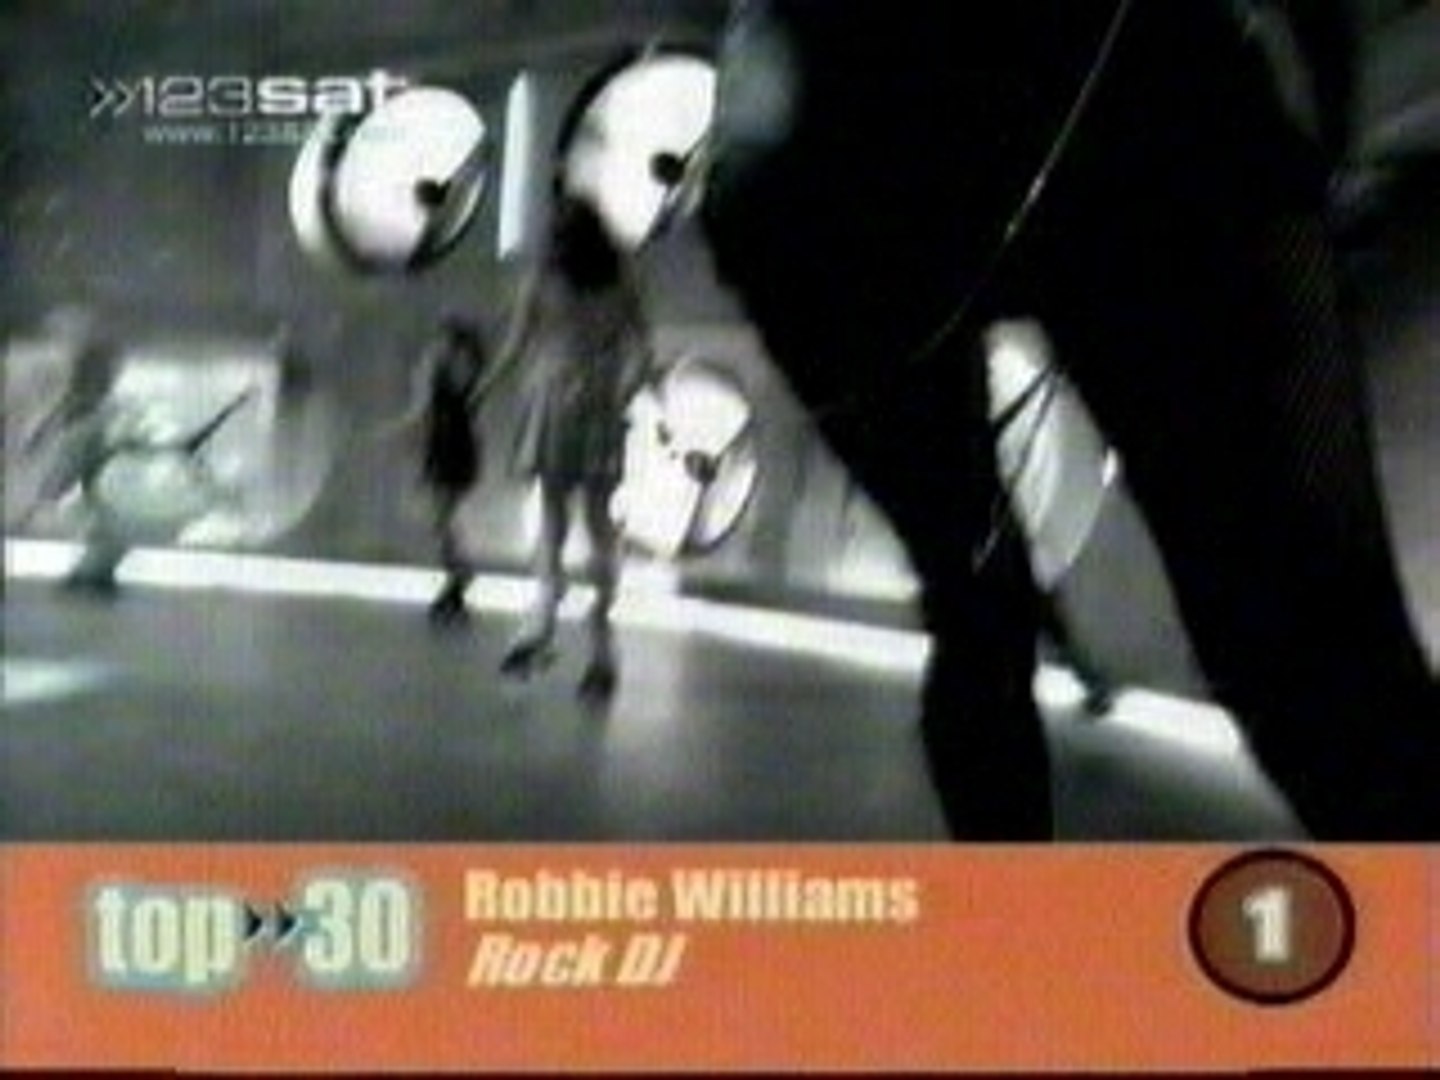 Robbie williamsm - rock dj - Vidéo Dailymotion